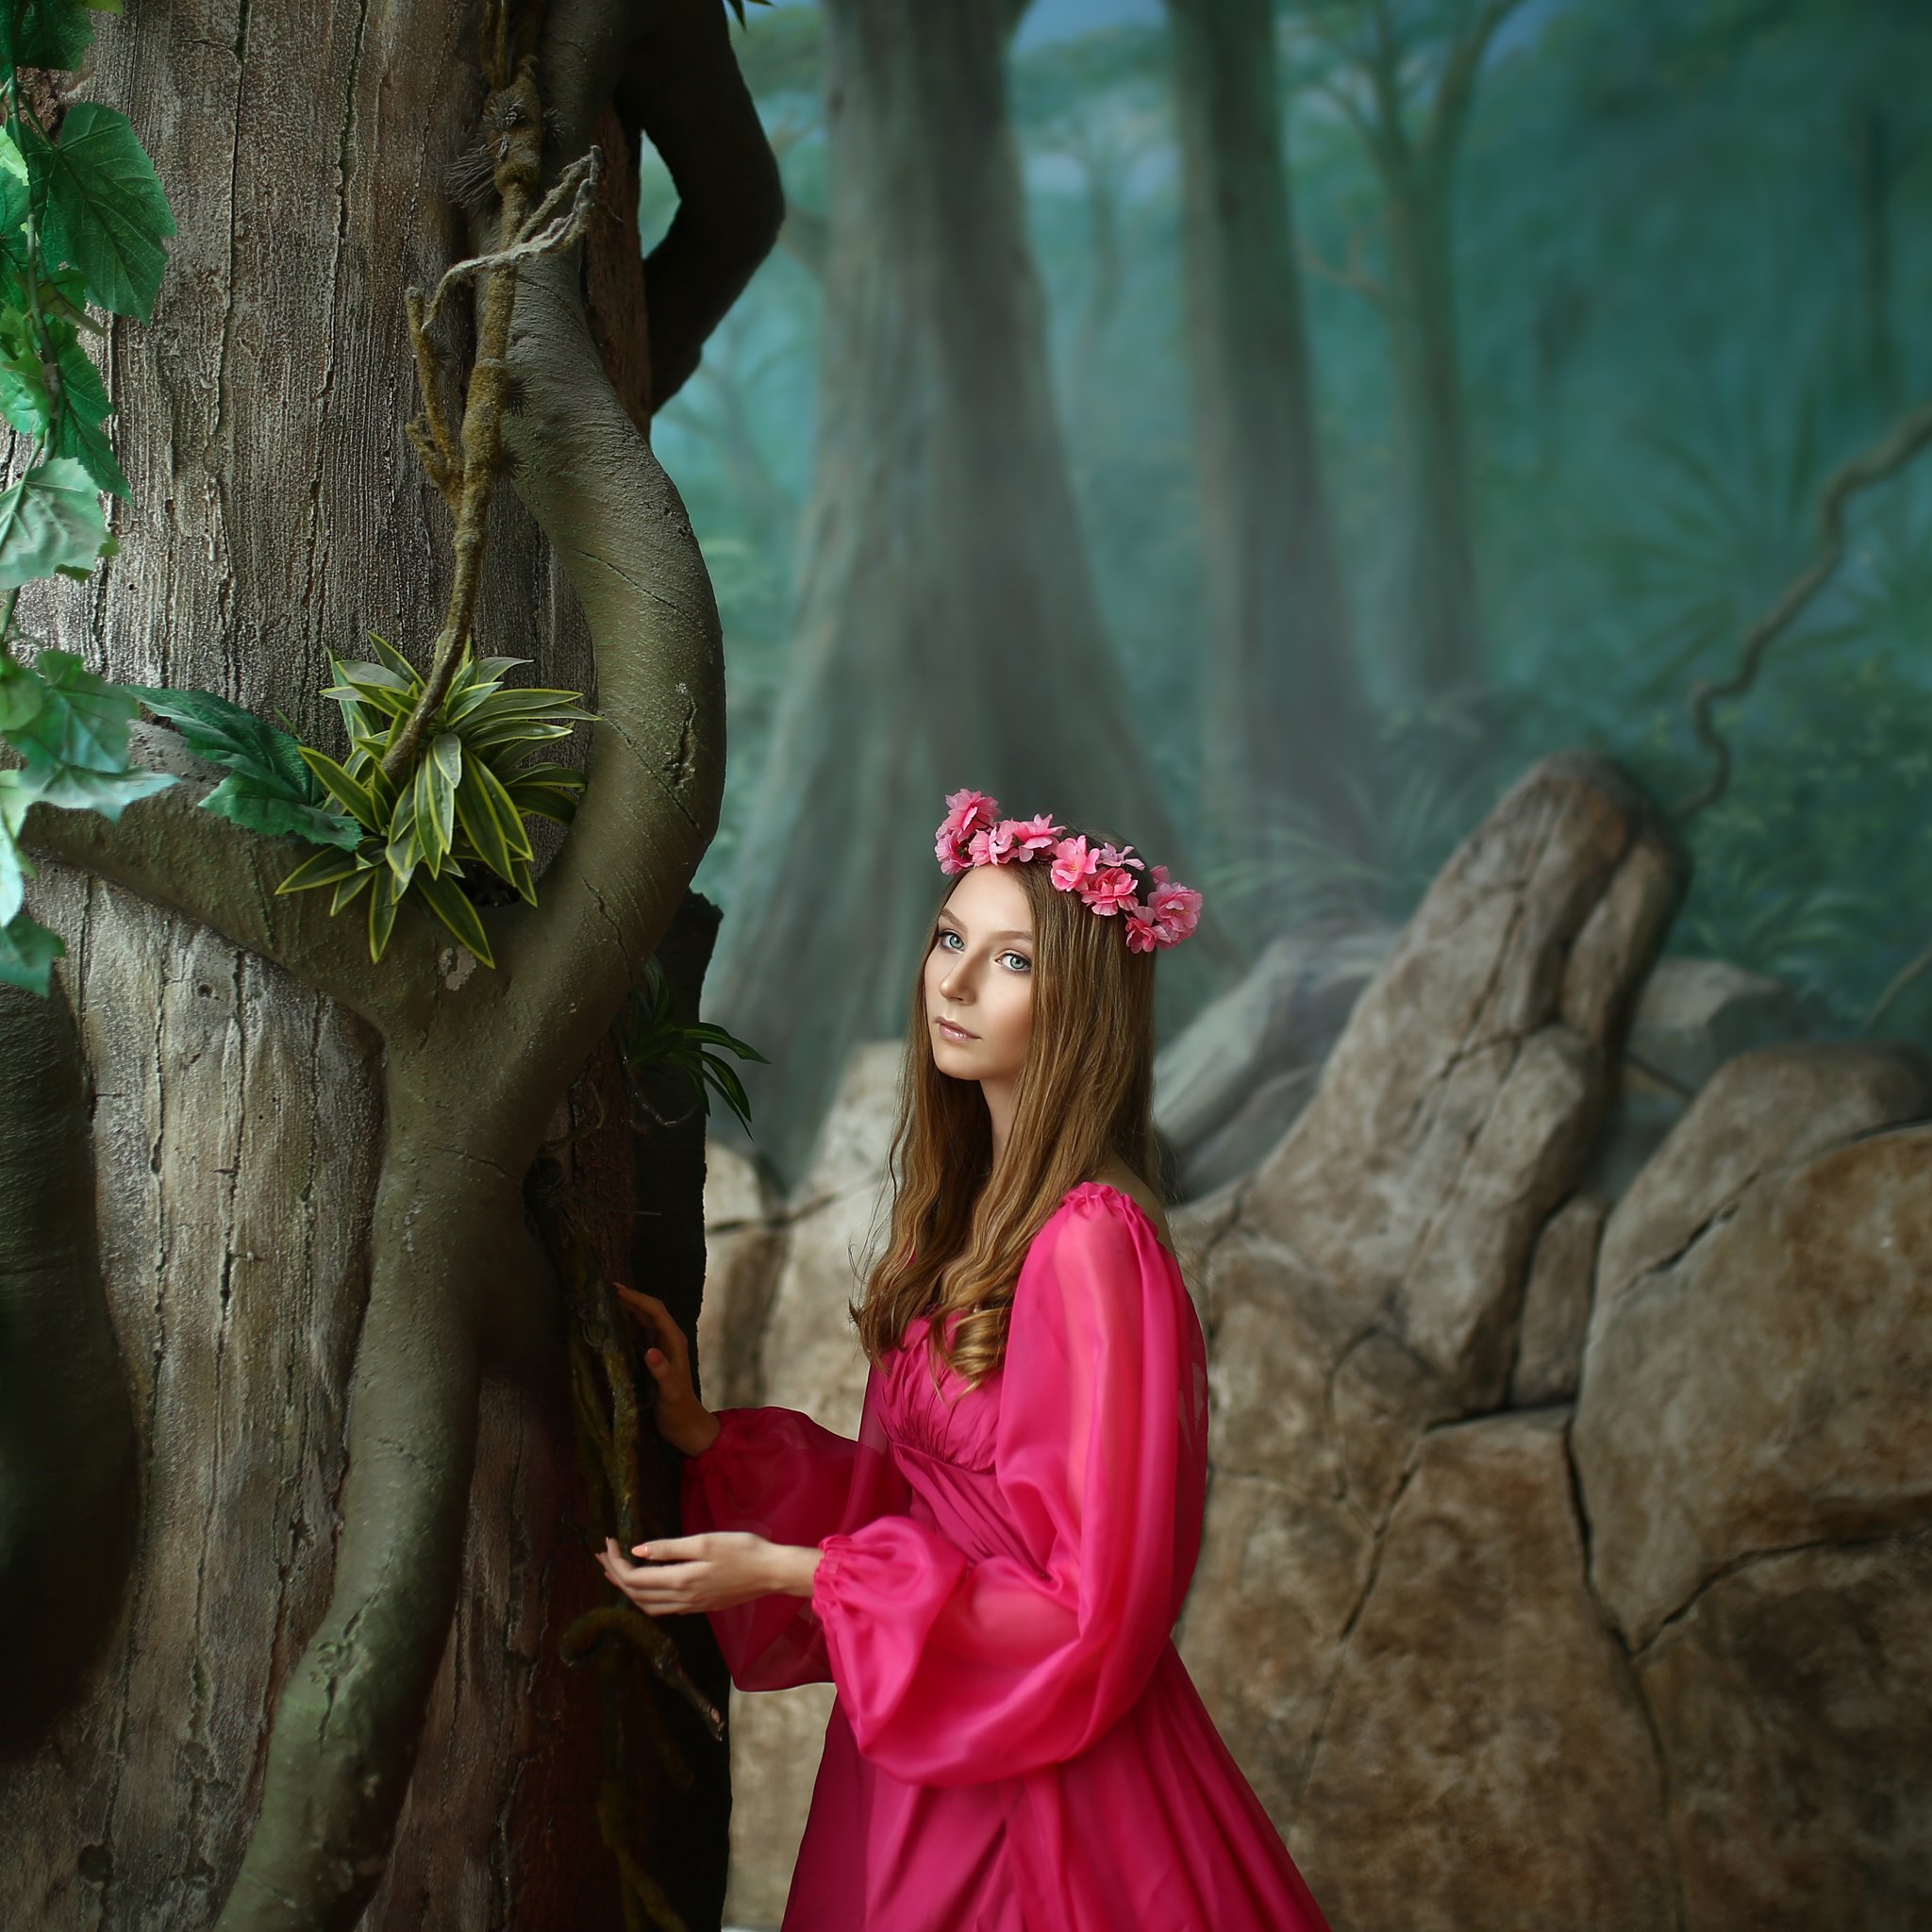 розовое платье, девушка в розовом платье, придуманный лес, джунгли, торговый центр, Ирина Голубятникова